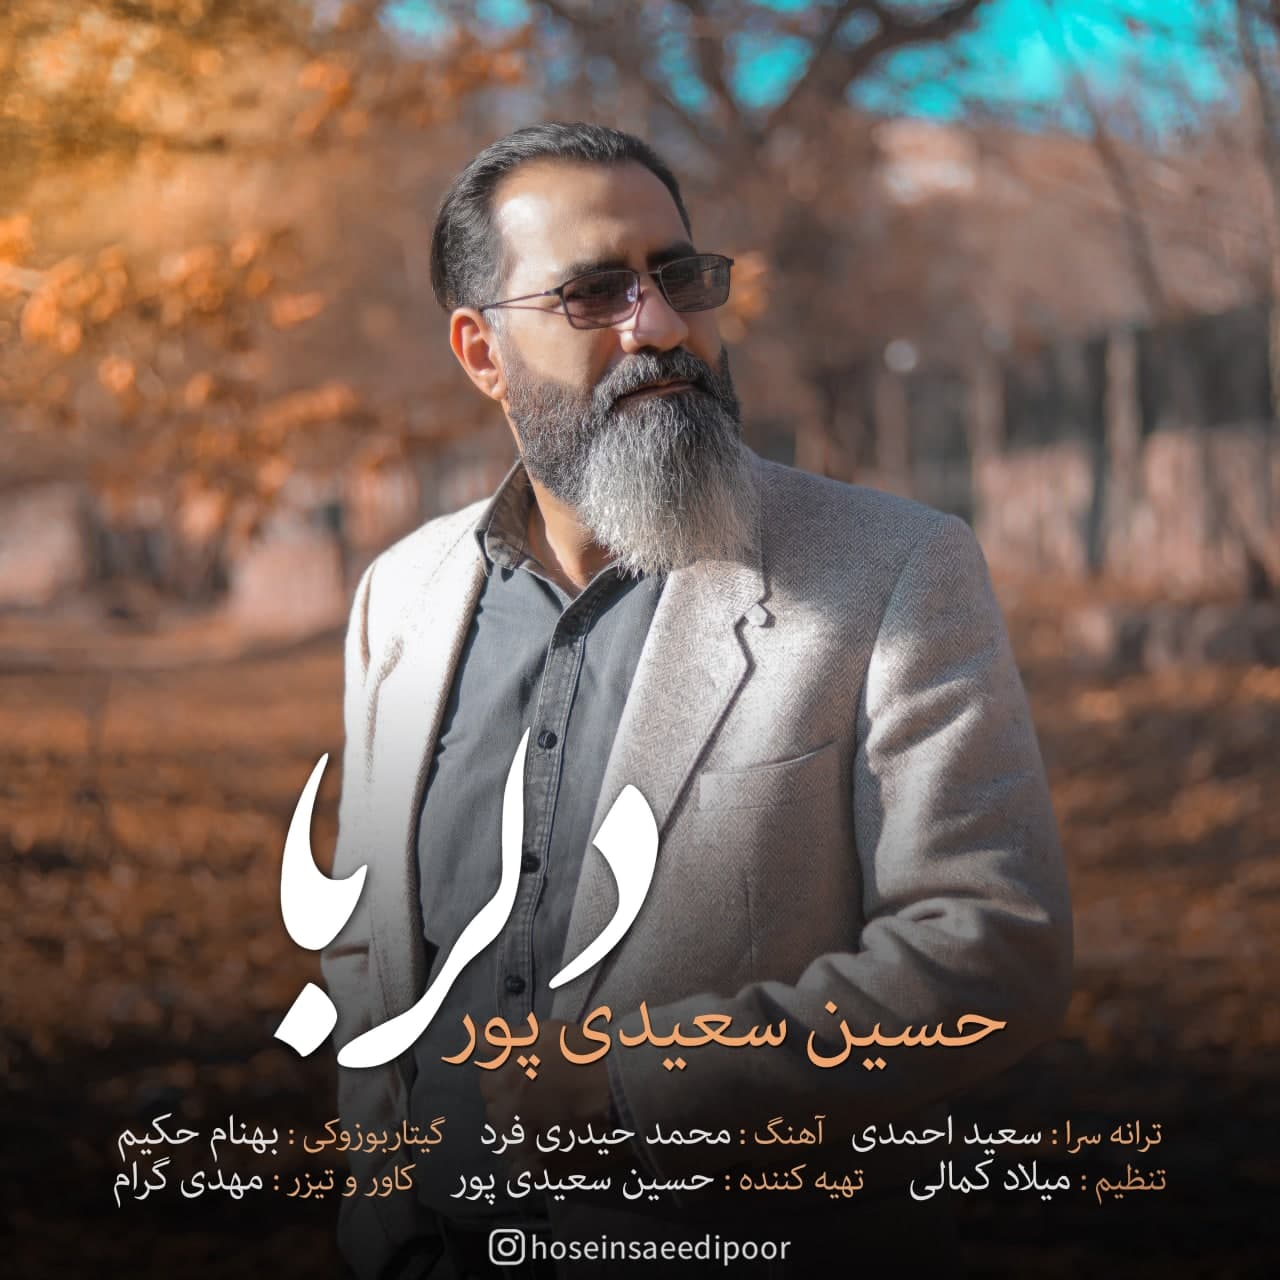 دانلود آهنگ جدید حسین سعیدی پور به نام دلربا